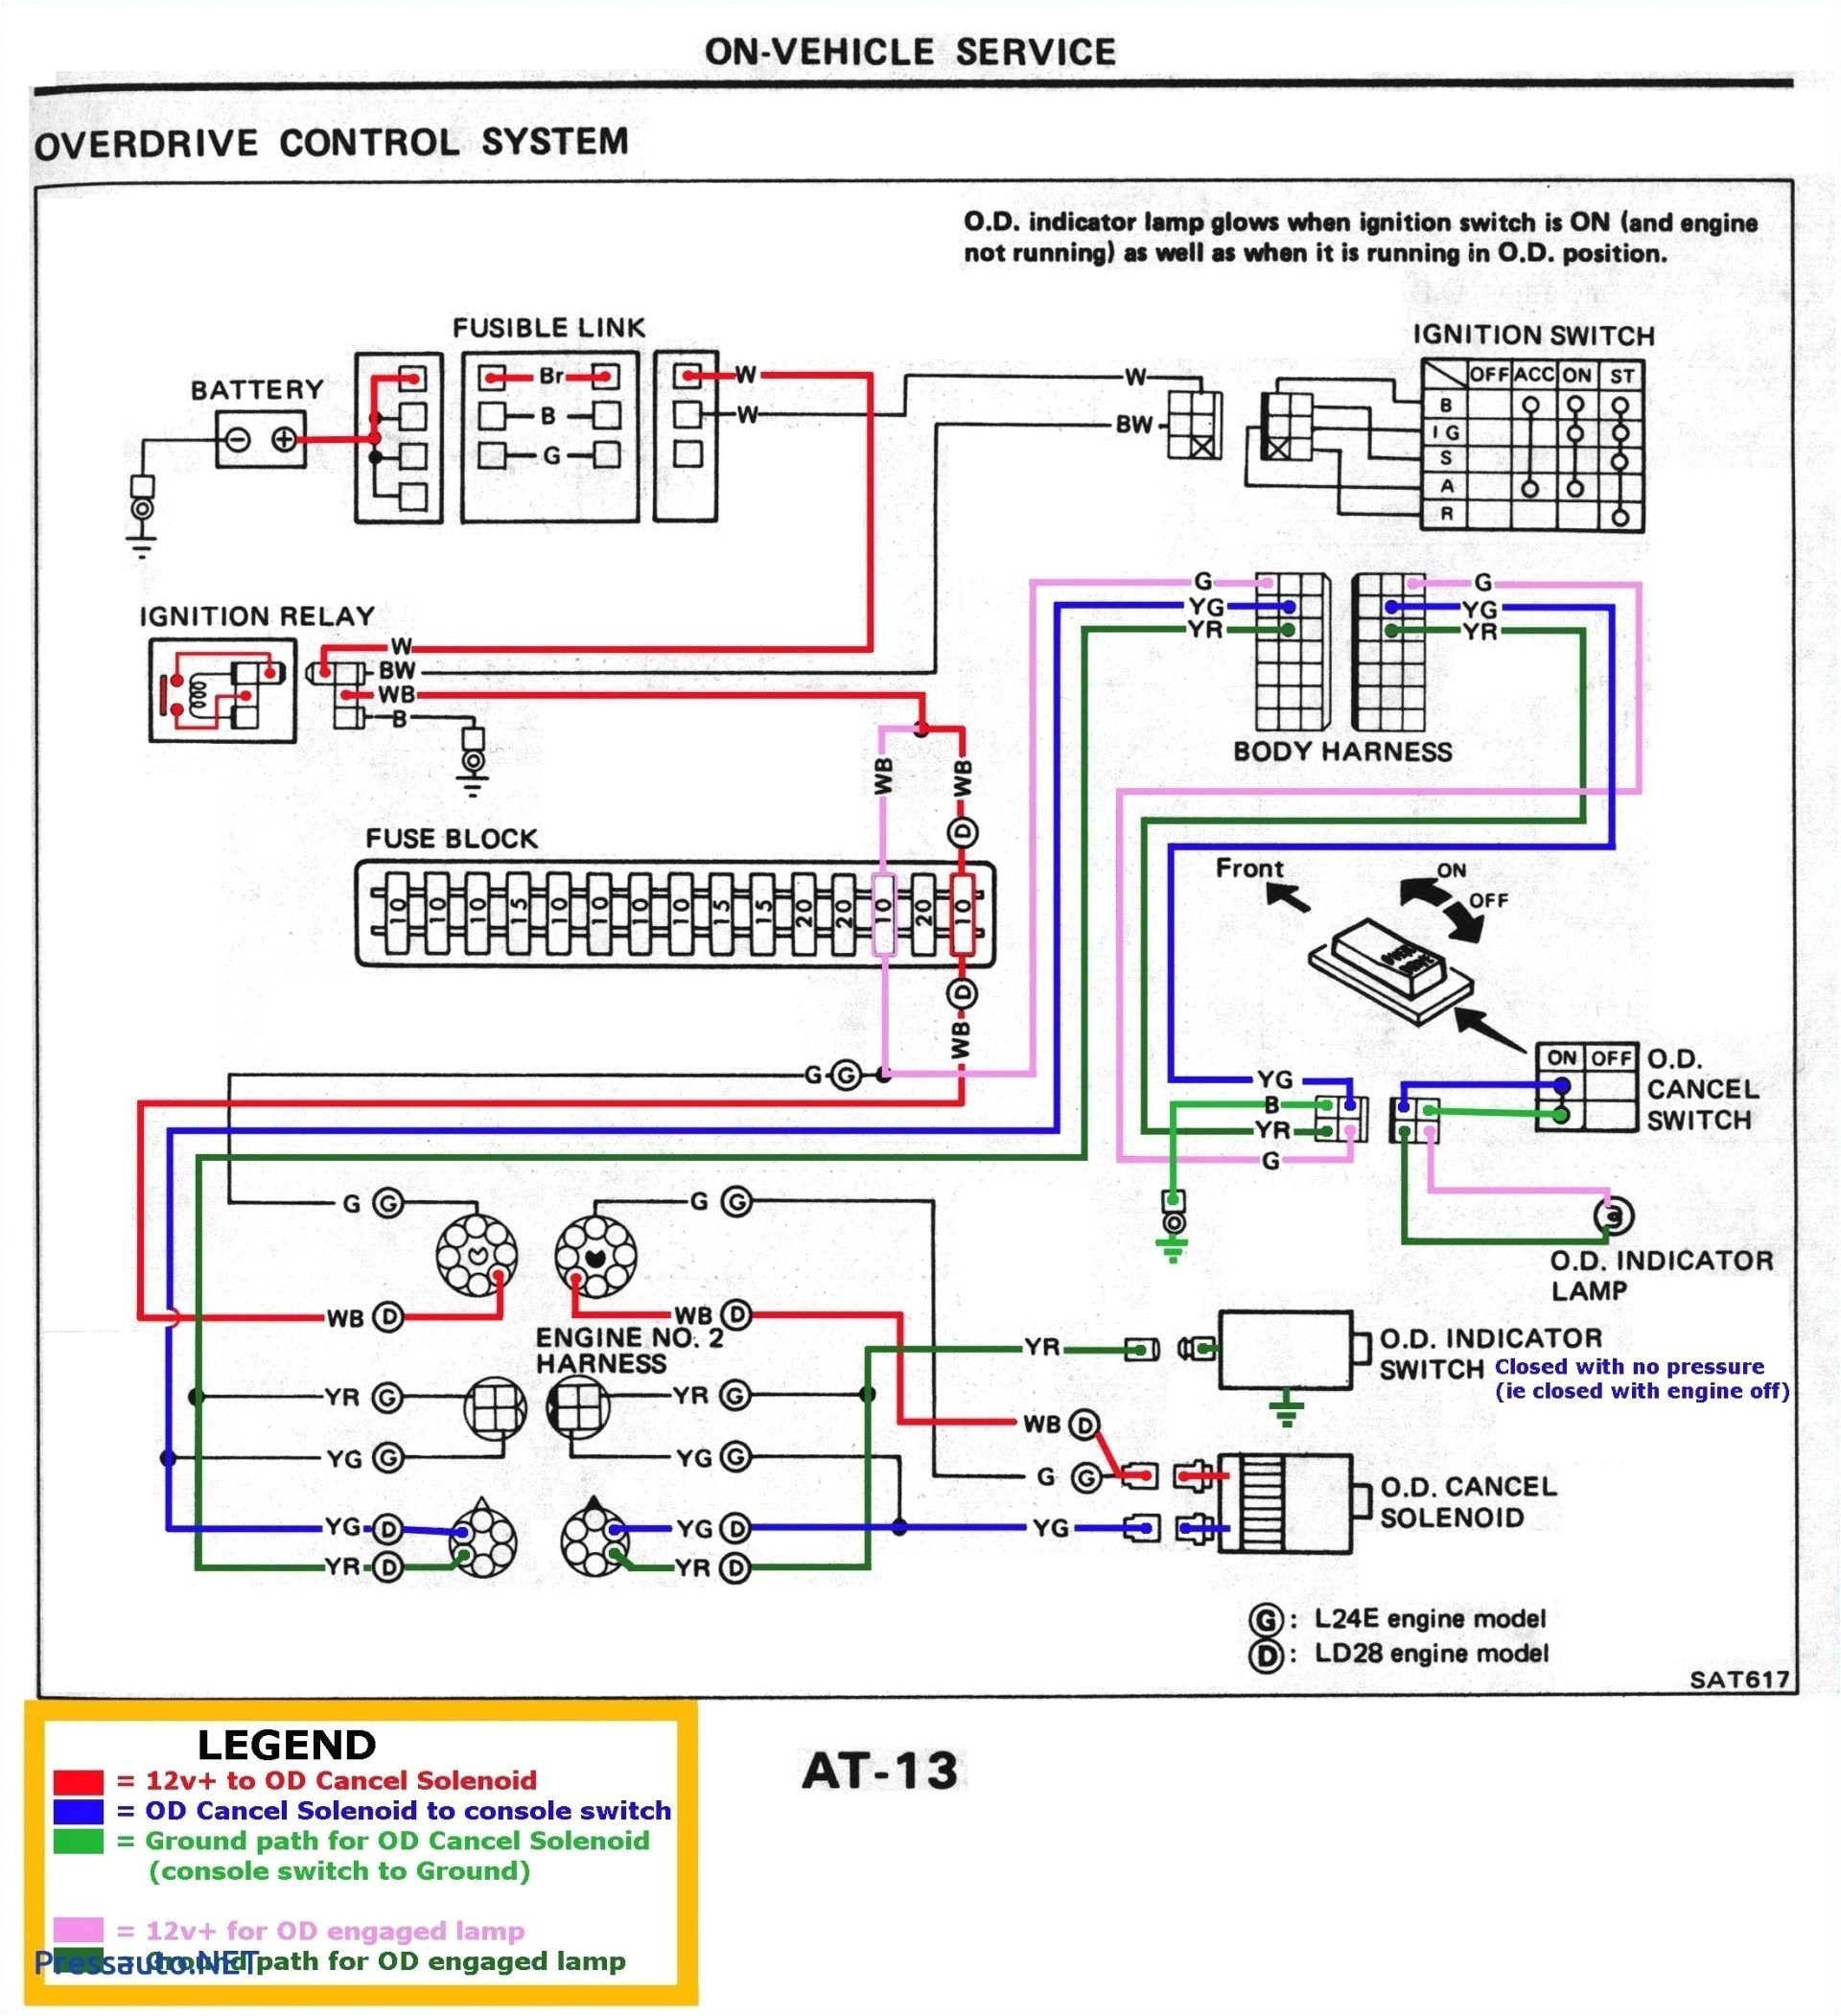 Dryer Heating Element Wiring Diagram 0859 Ge Dryer Heating Element Wiring Diagram Wiring Library